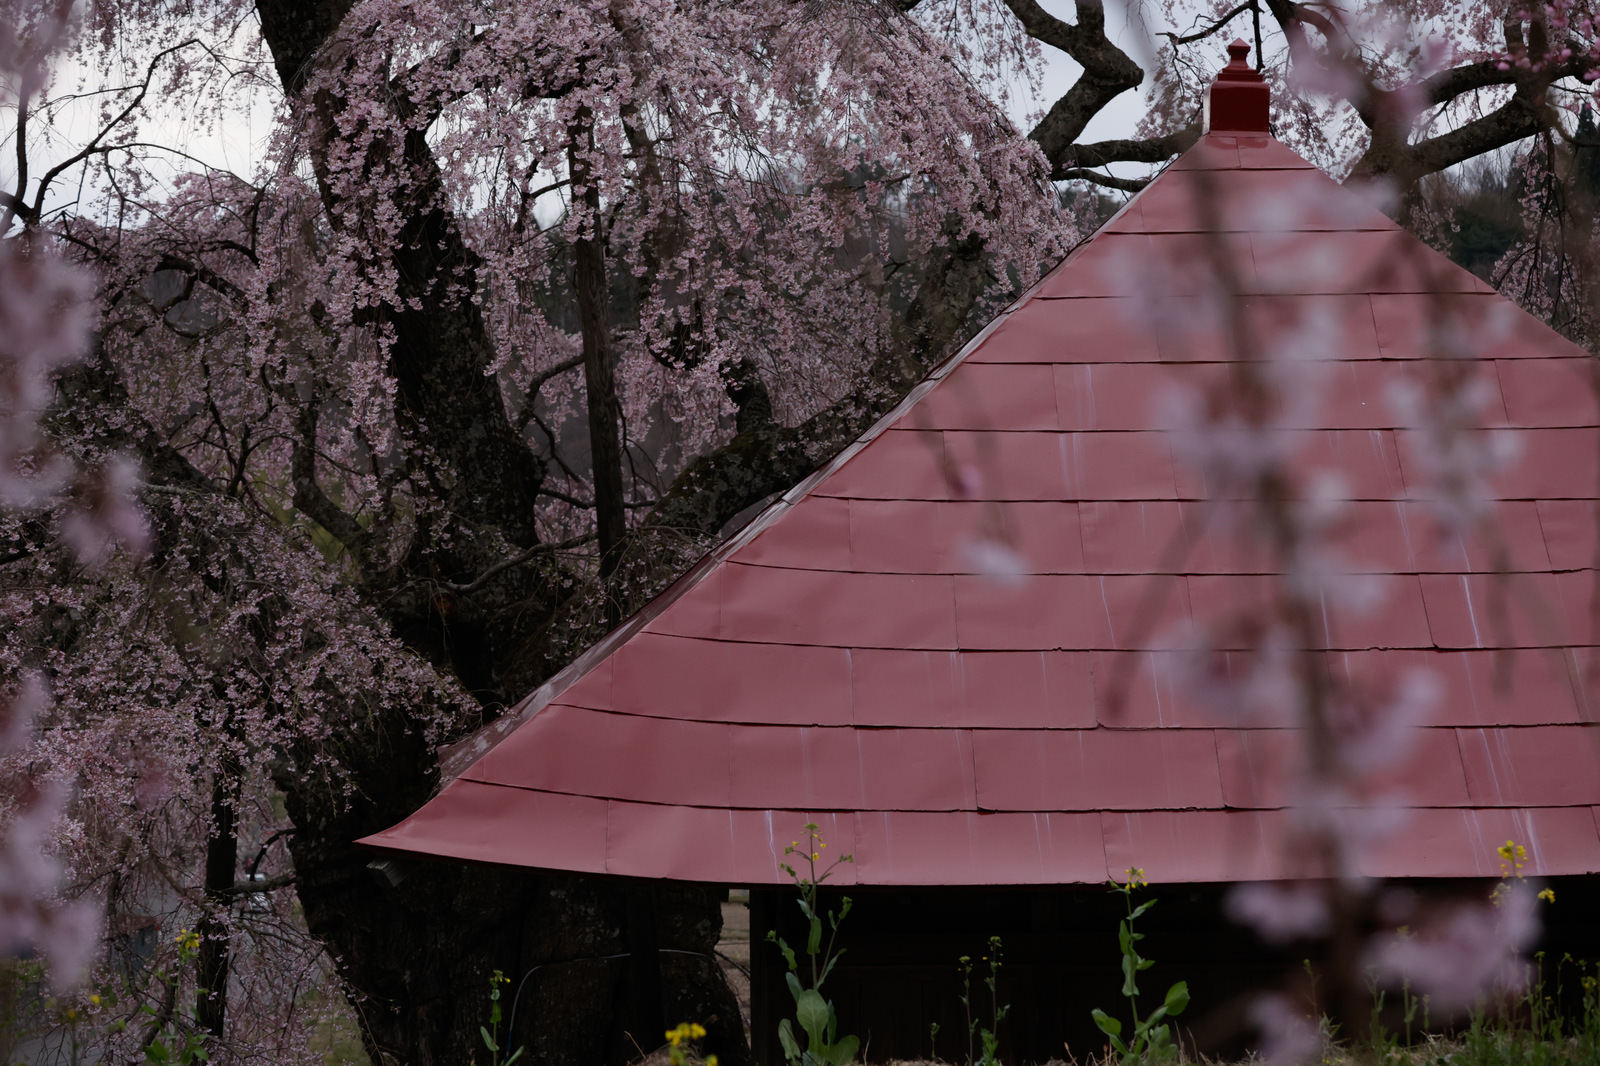 「不動堂の屋根と上石の不動桜 | フリー素材のぱくたそ」の写真